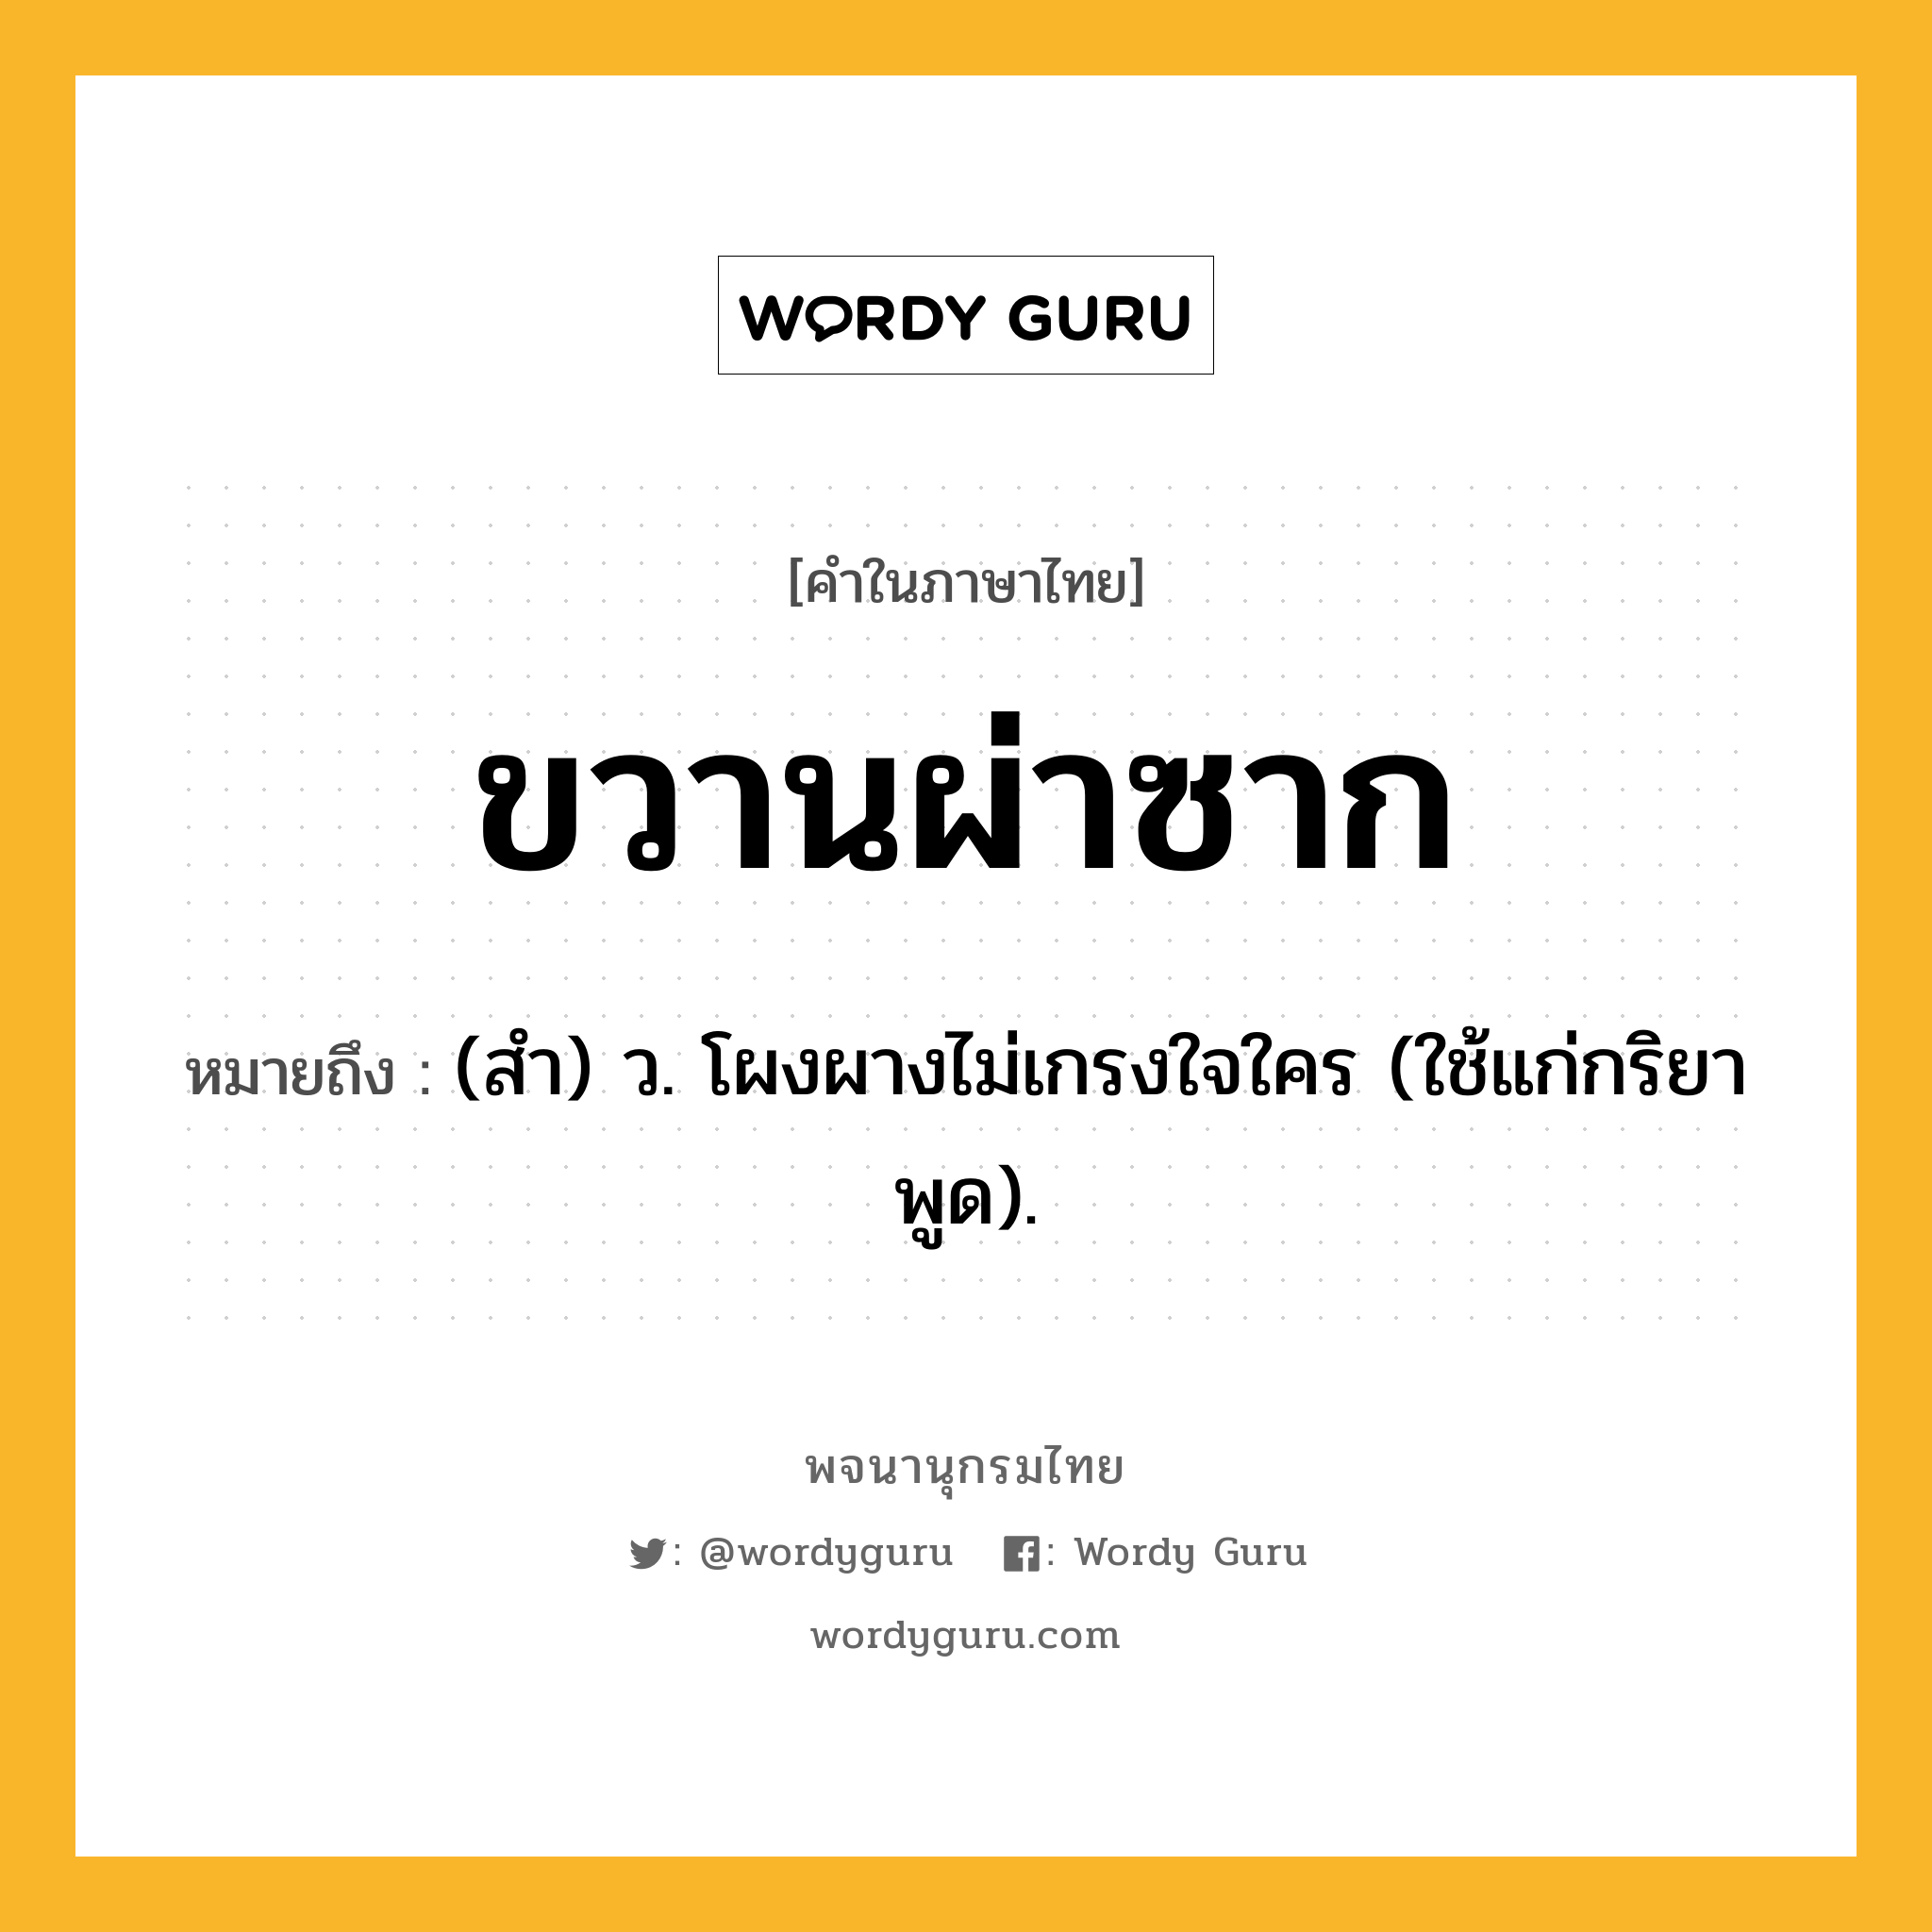 ขวานผ่าซาก ความหมาย หมายถึงอะไร?, คำในภาษาไทย ขวานผ่าซาก หมายถึง (สํา) ว. โผงผางไม่เกรงใจใคร (ใช้แก่กริยาพูด).